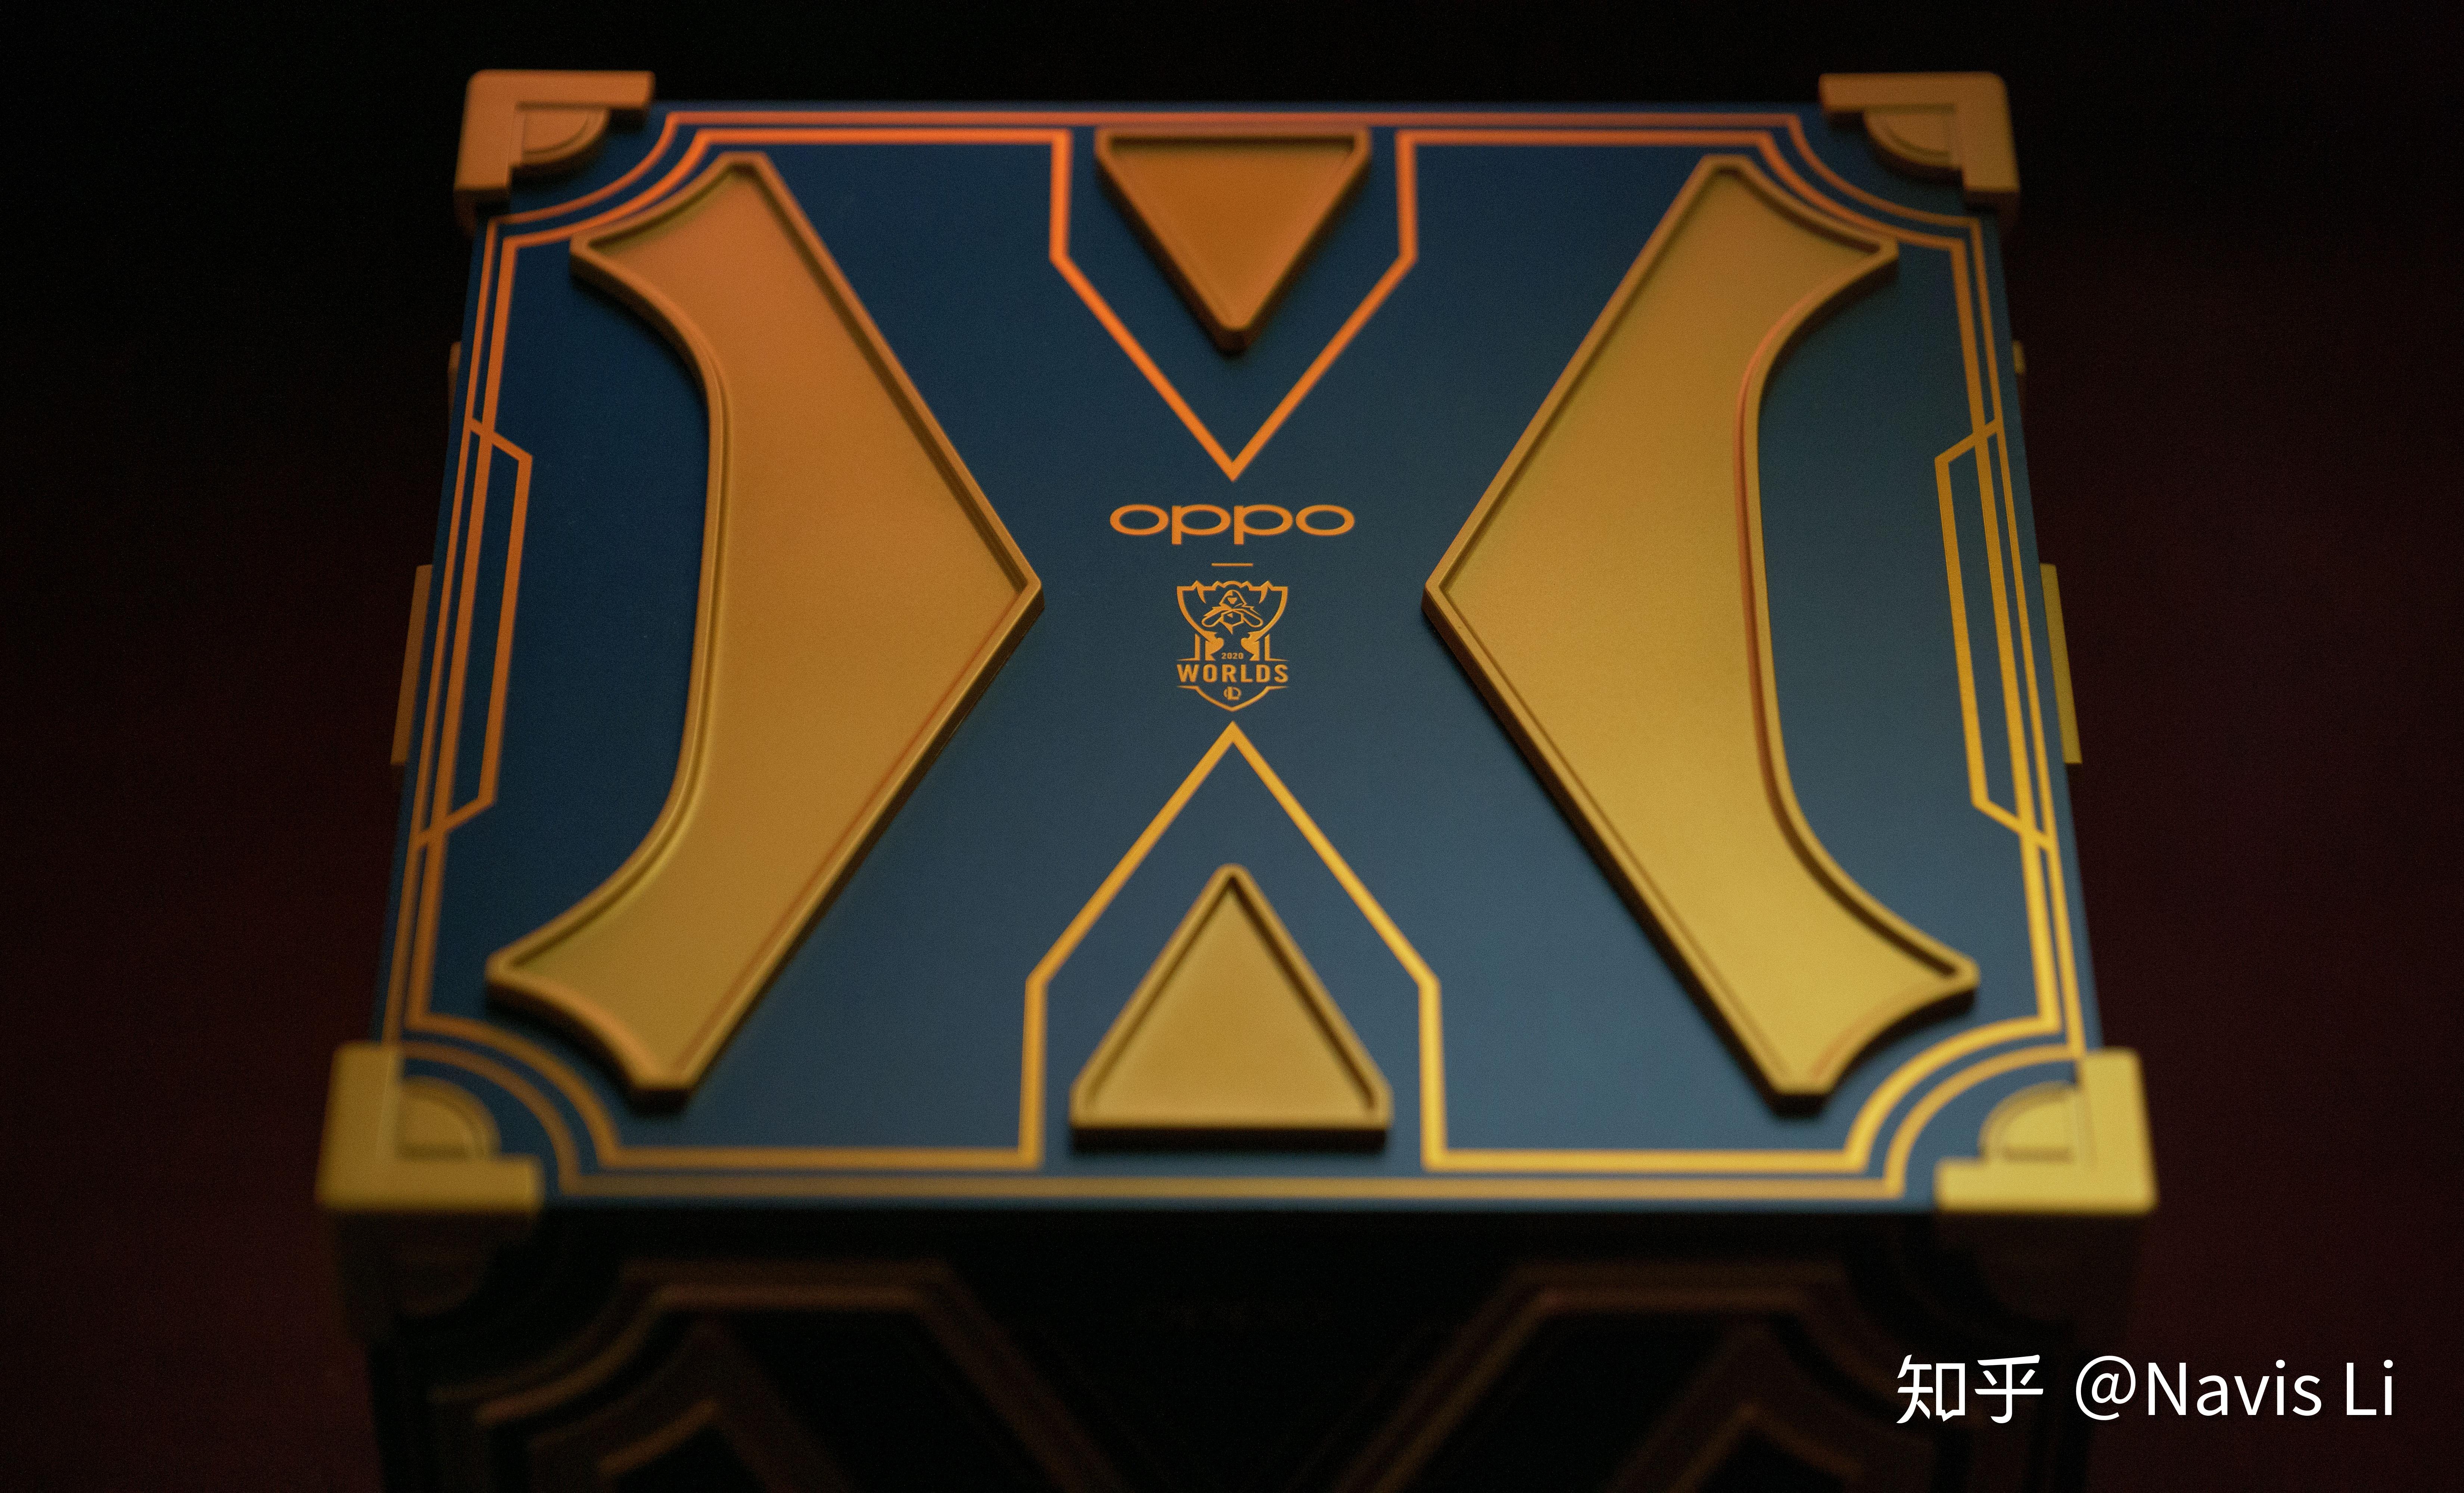 如何评价10月19日oppo发布的findx2英雄联盟s10定制机有哪些亮点和槽